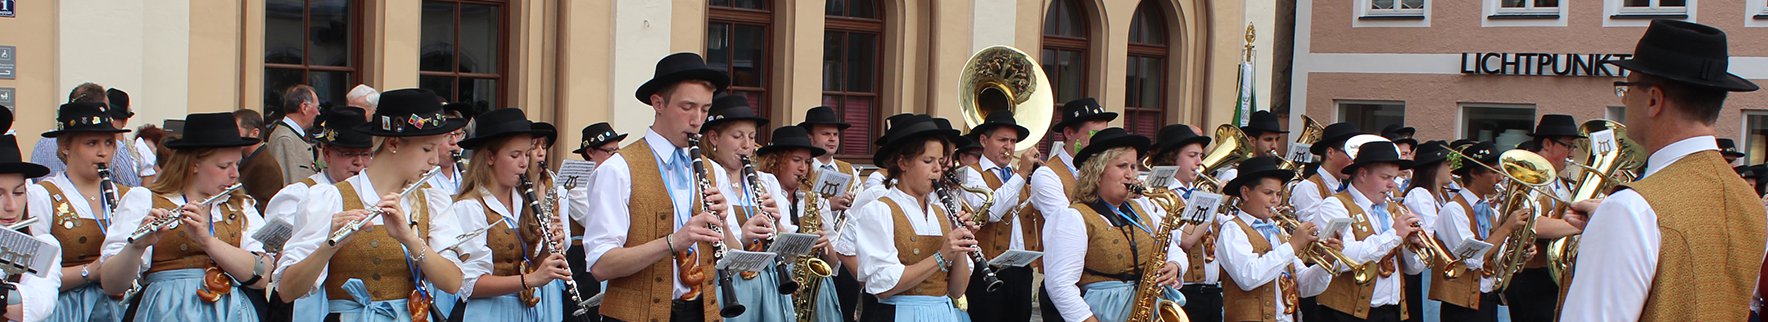 Die Stadtkapelle (Blaskaüpelle) Pfaffenhofen in bunter Tracht musiziert vor dem Rathaus